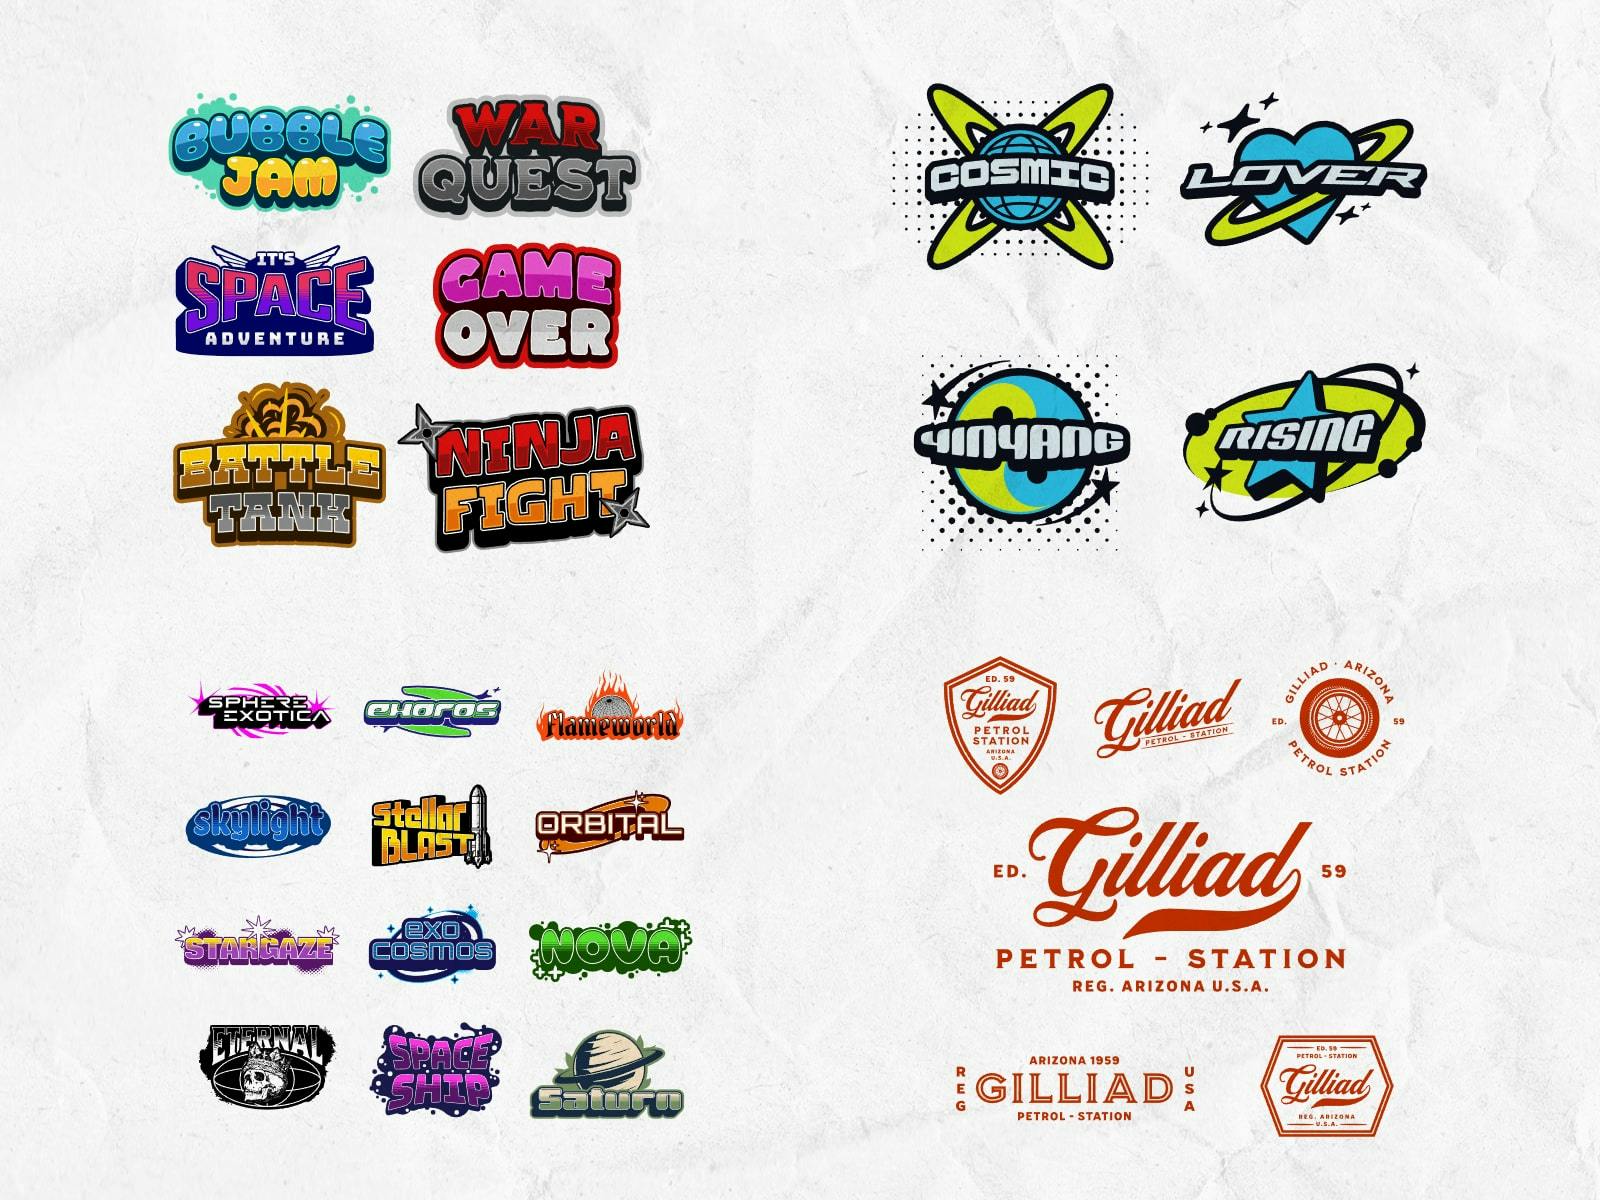 Flash Sheet Logo: Collection of flash sheet-inspired logo designs